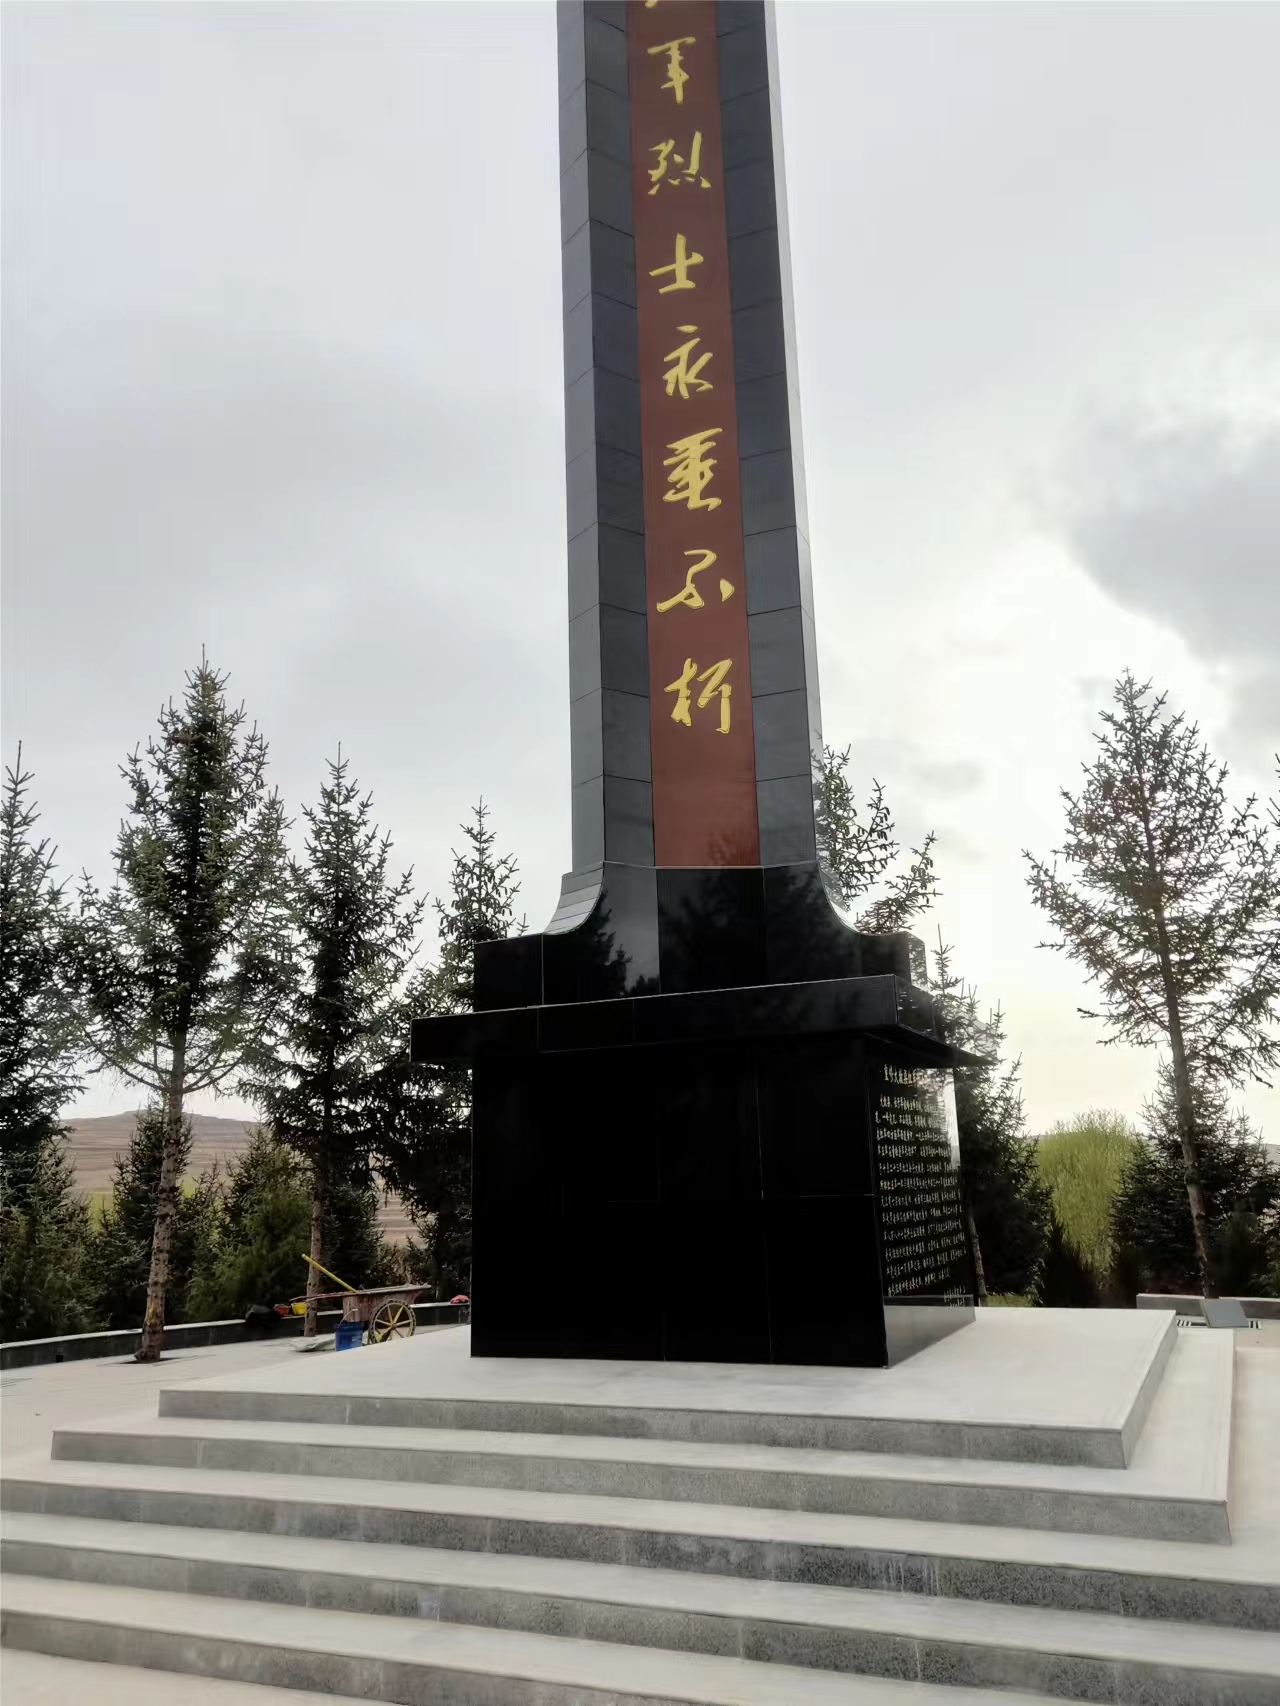 会宁红军烈士陵园图片